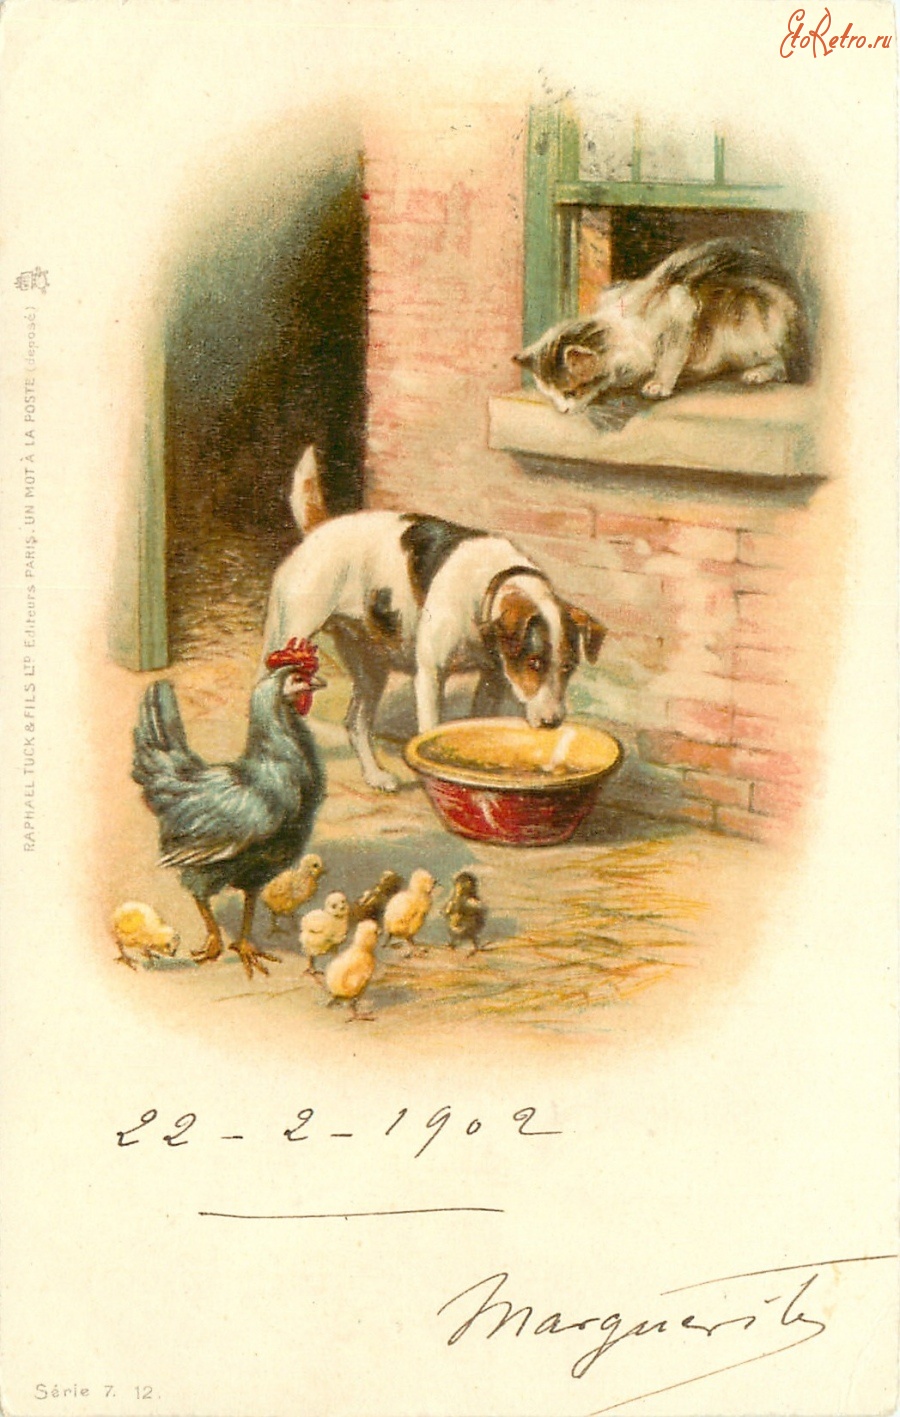 Ретро открытки - Собаки и другие животные. Терьер, кошка и курица с цыплятами